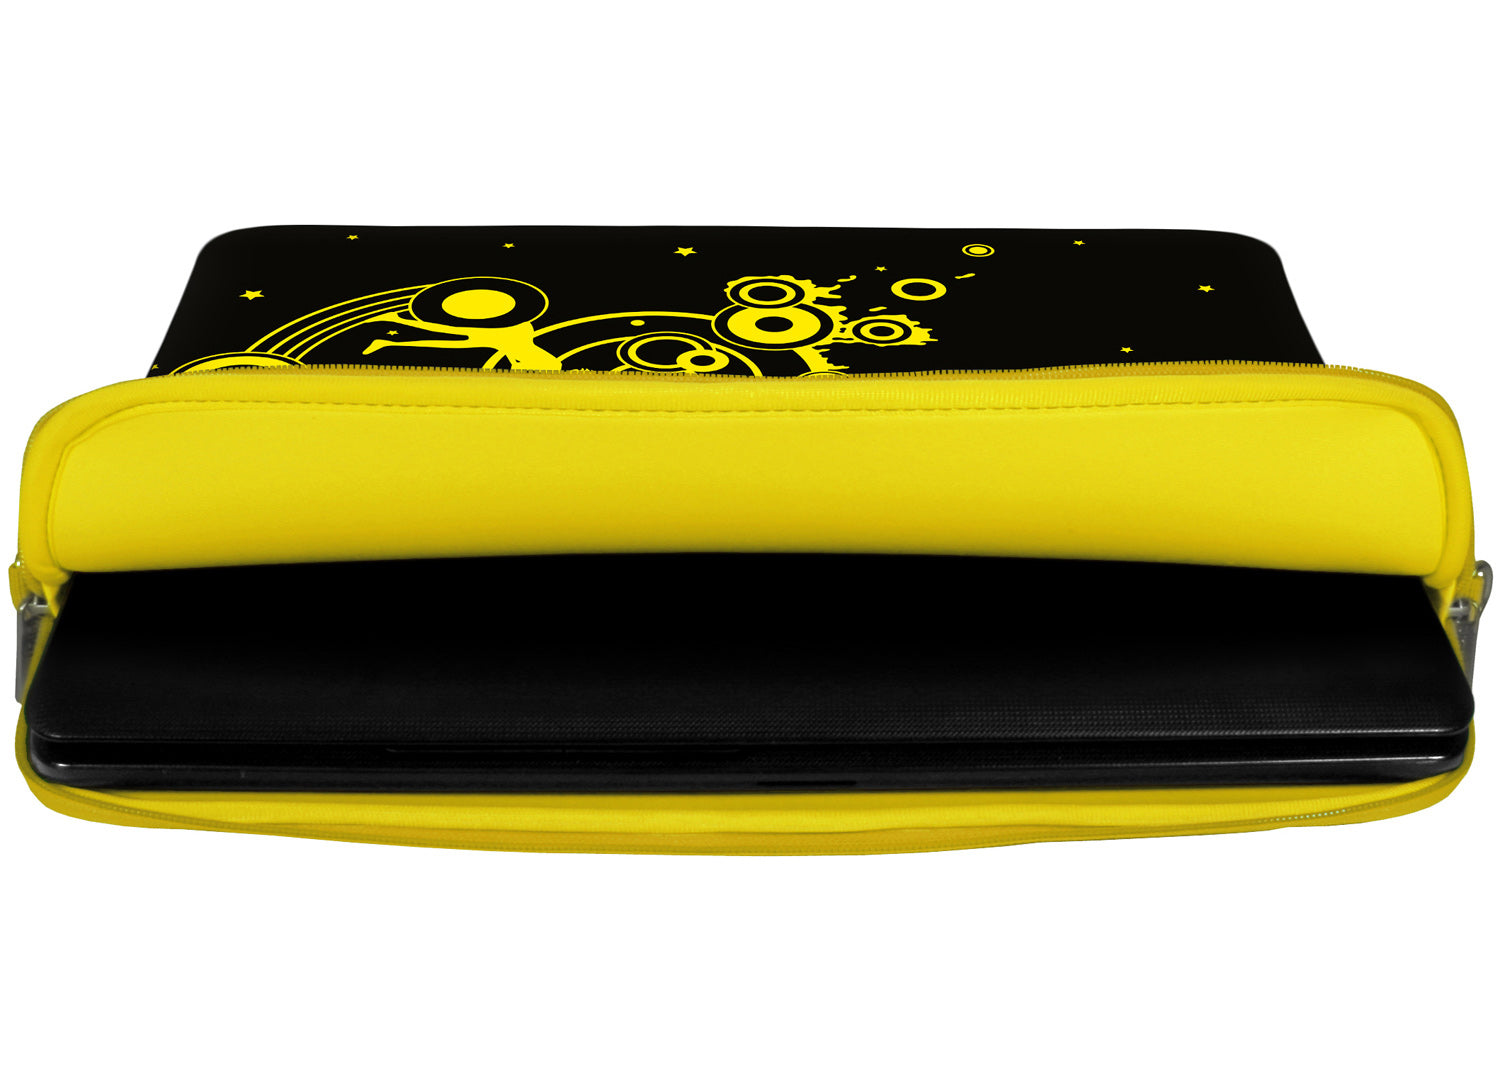 Innenansicht mit Schutzlippen der LS161 Swing Designer Tasche für Laptop in gelb aus wasserabweisendem Neopren